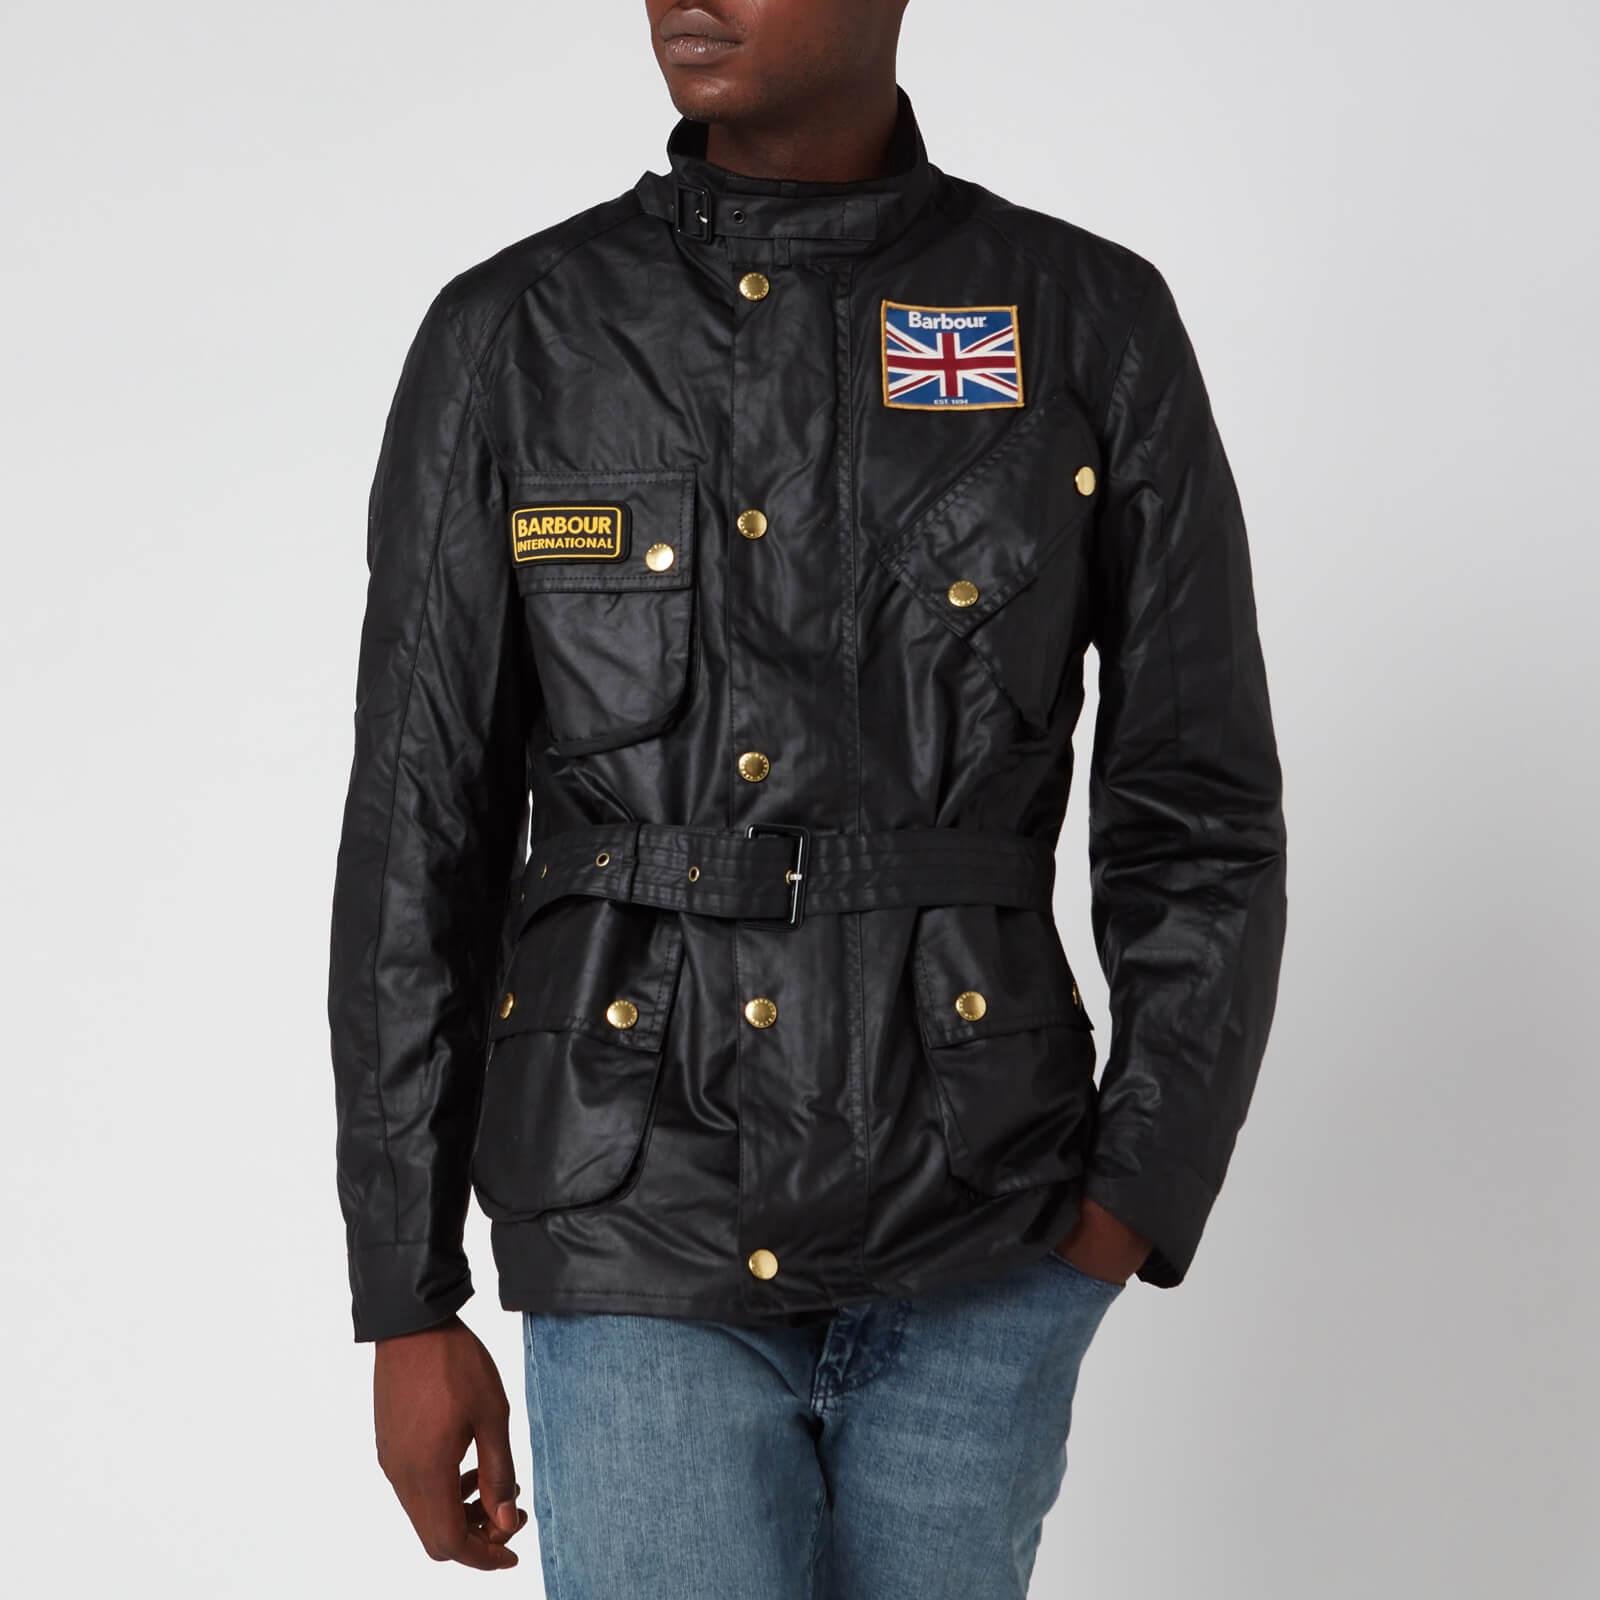 union jack barbour jacket